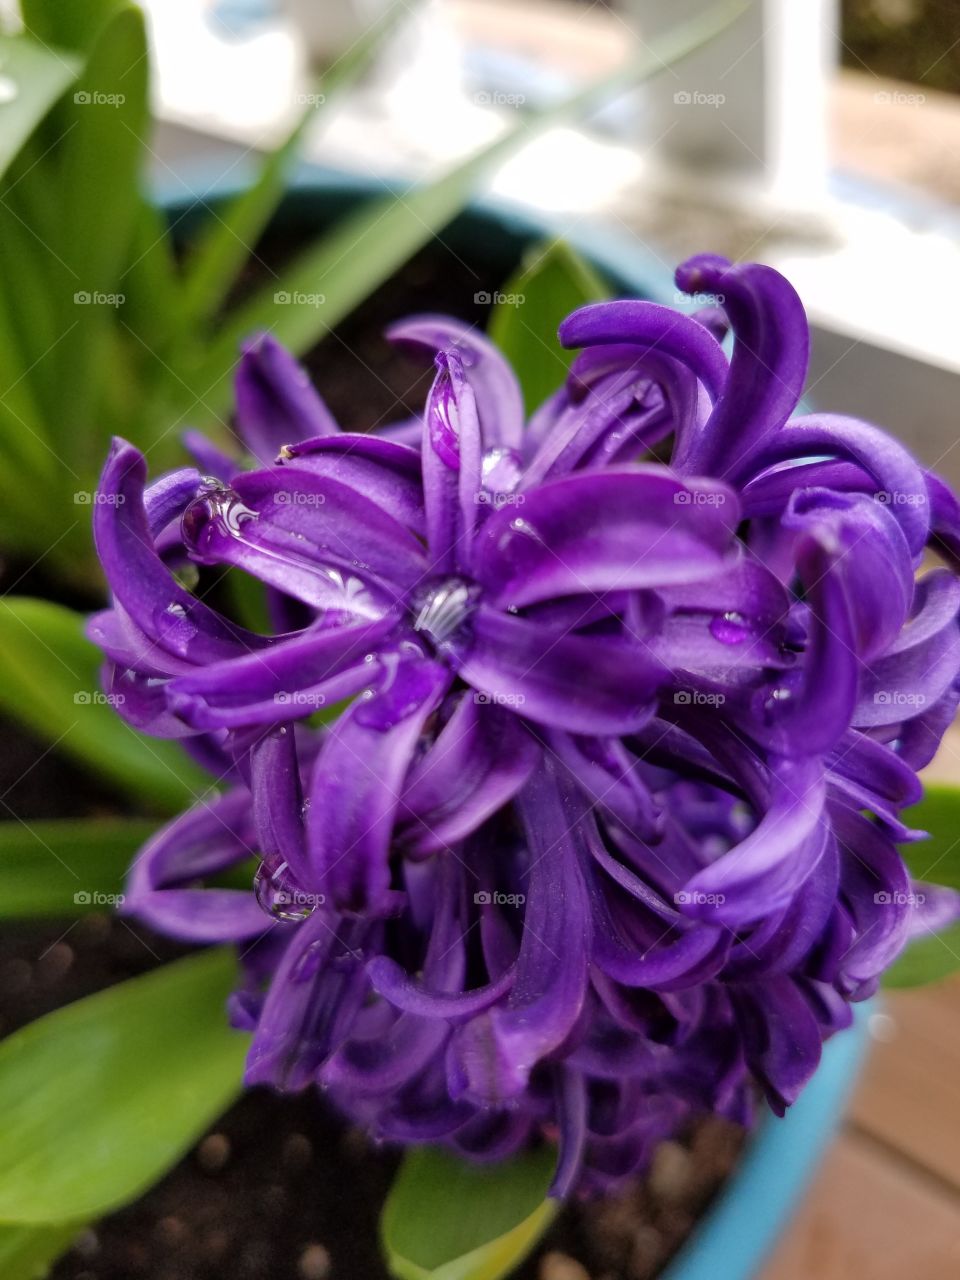 A purple hyacinth.